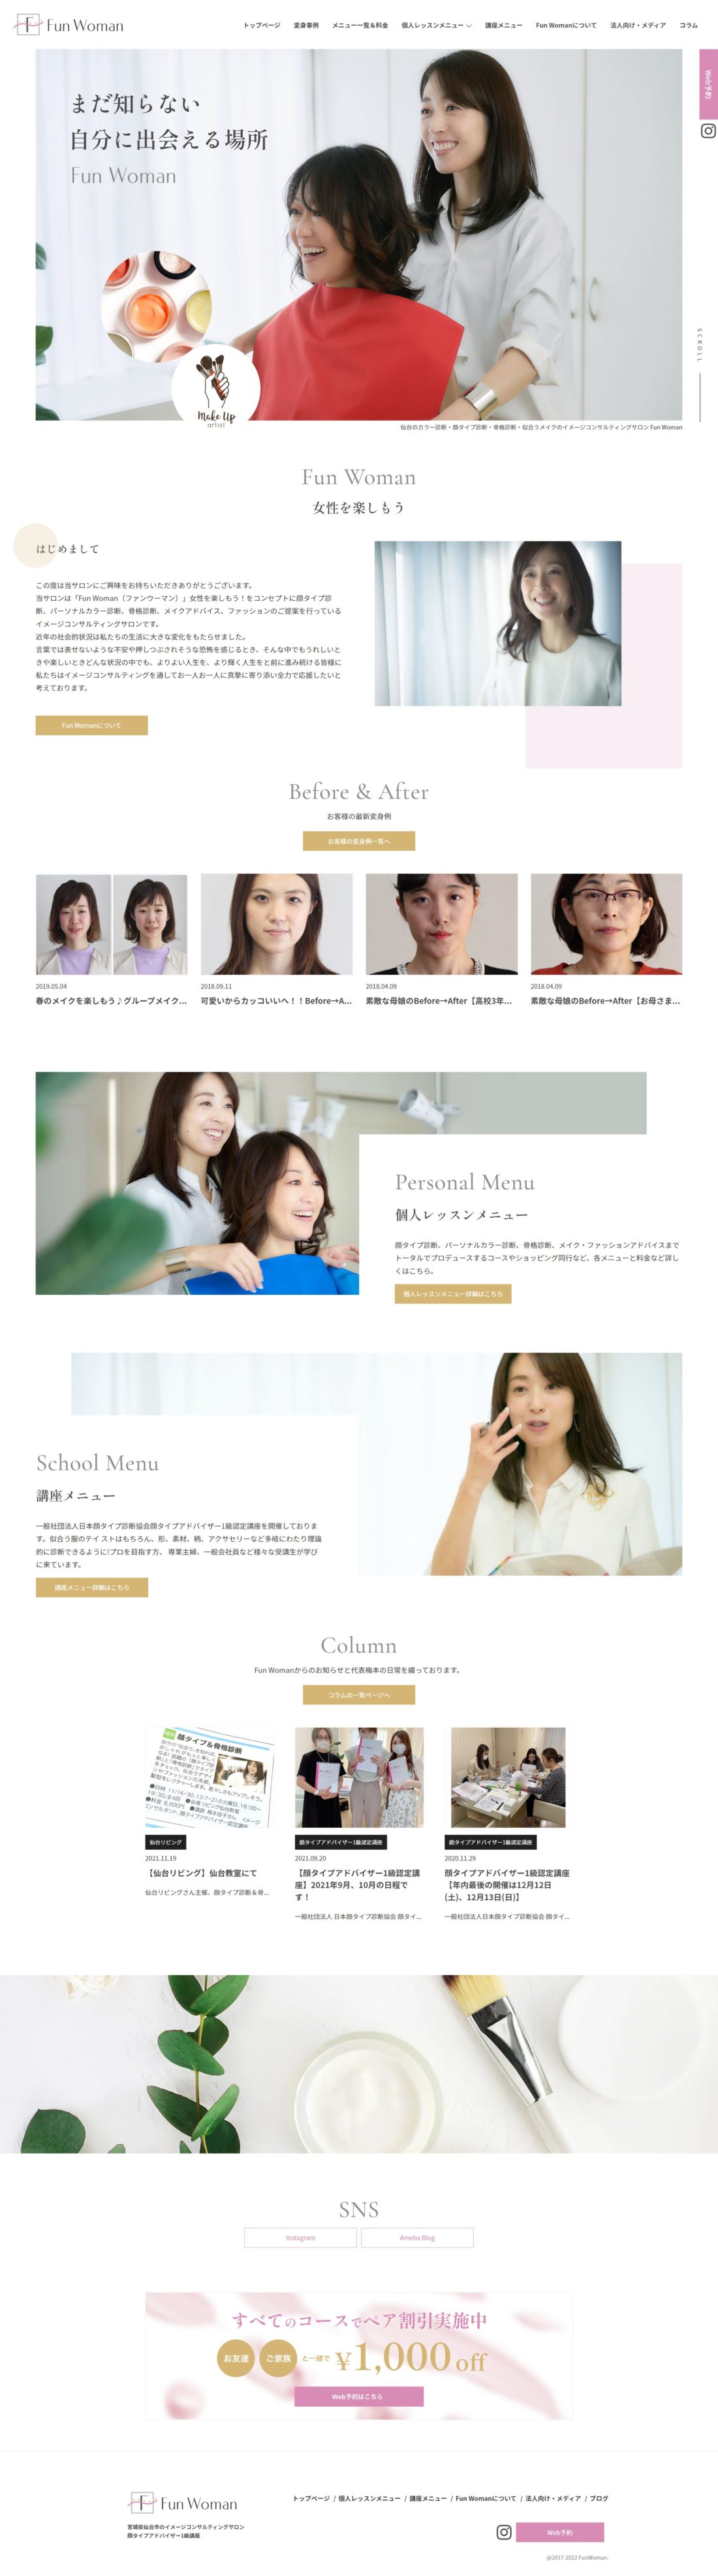 仙台のカラー診断・顔タイプ診断・骨格診断・似合うメイクのイメージコンサルティングサロン Fun Womanのホームページデザイン